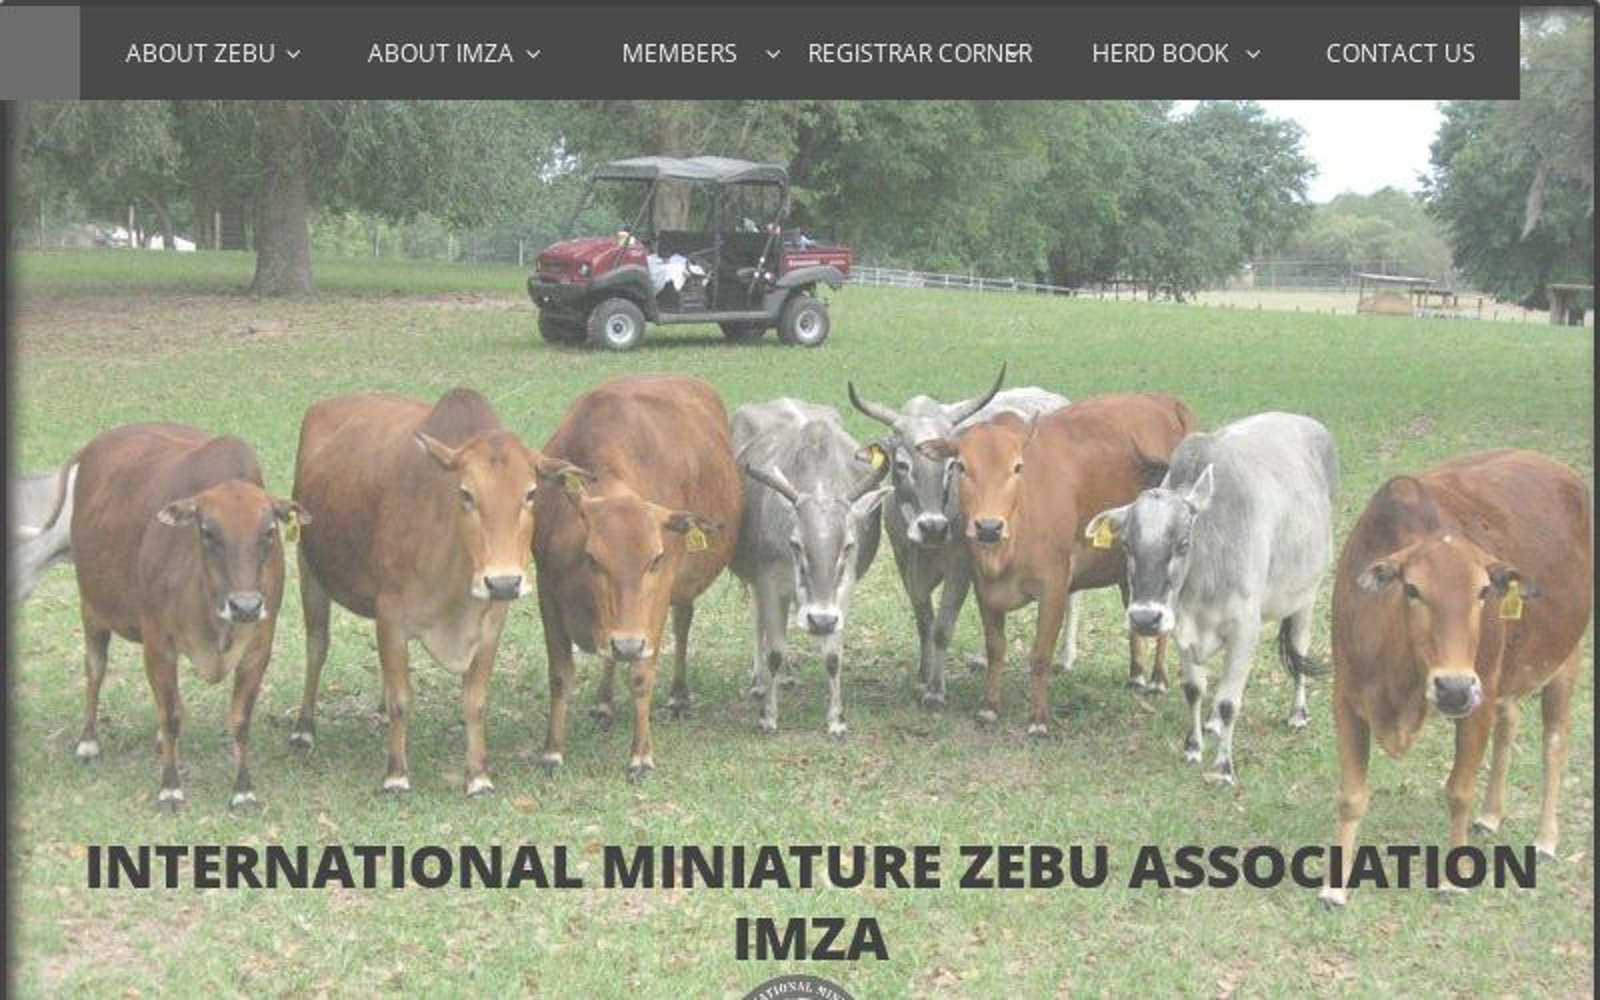 www.imza.name